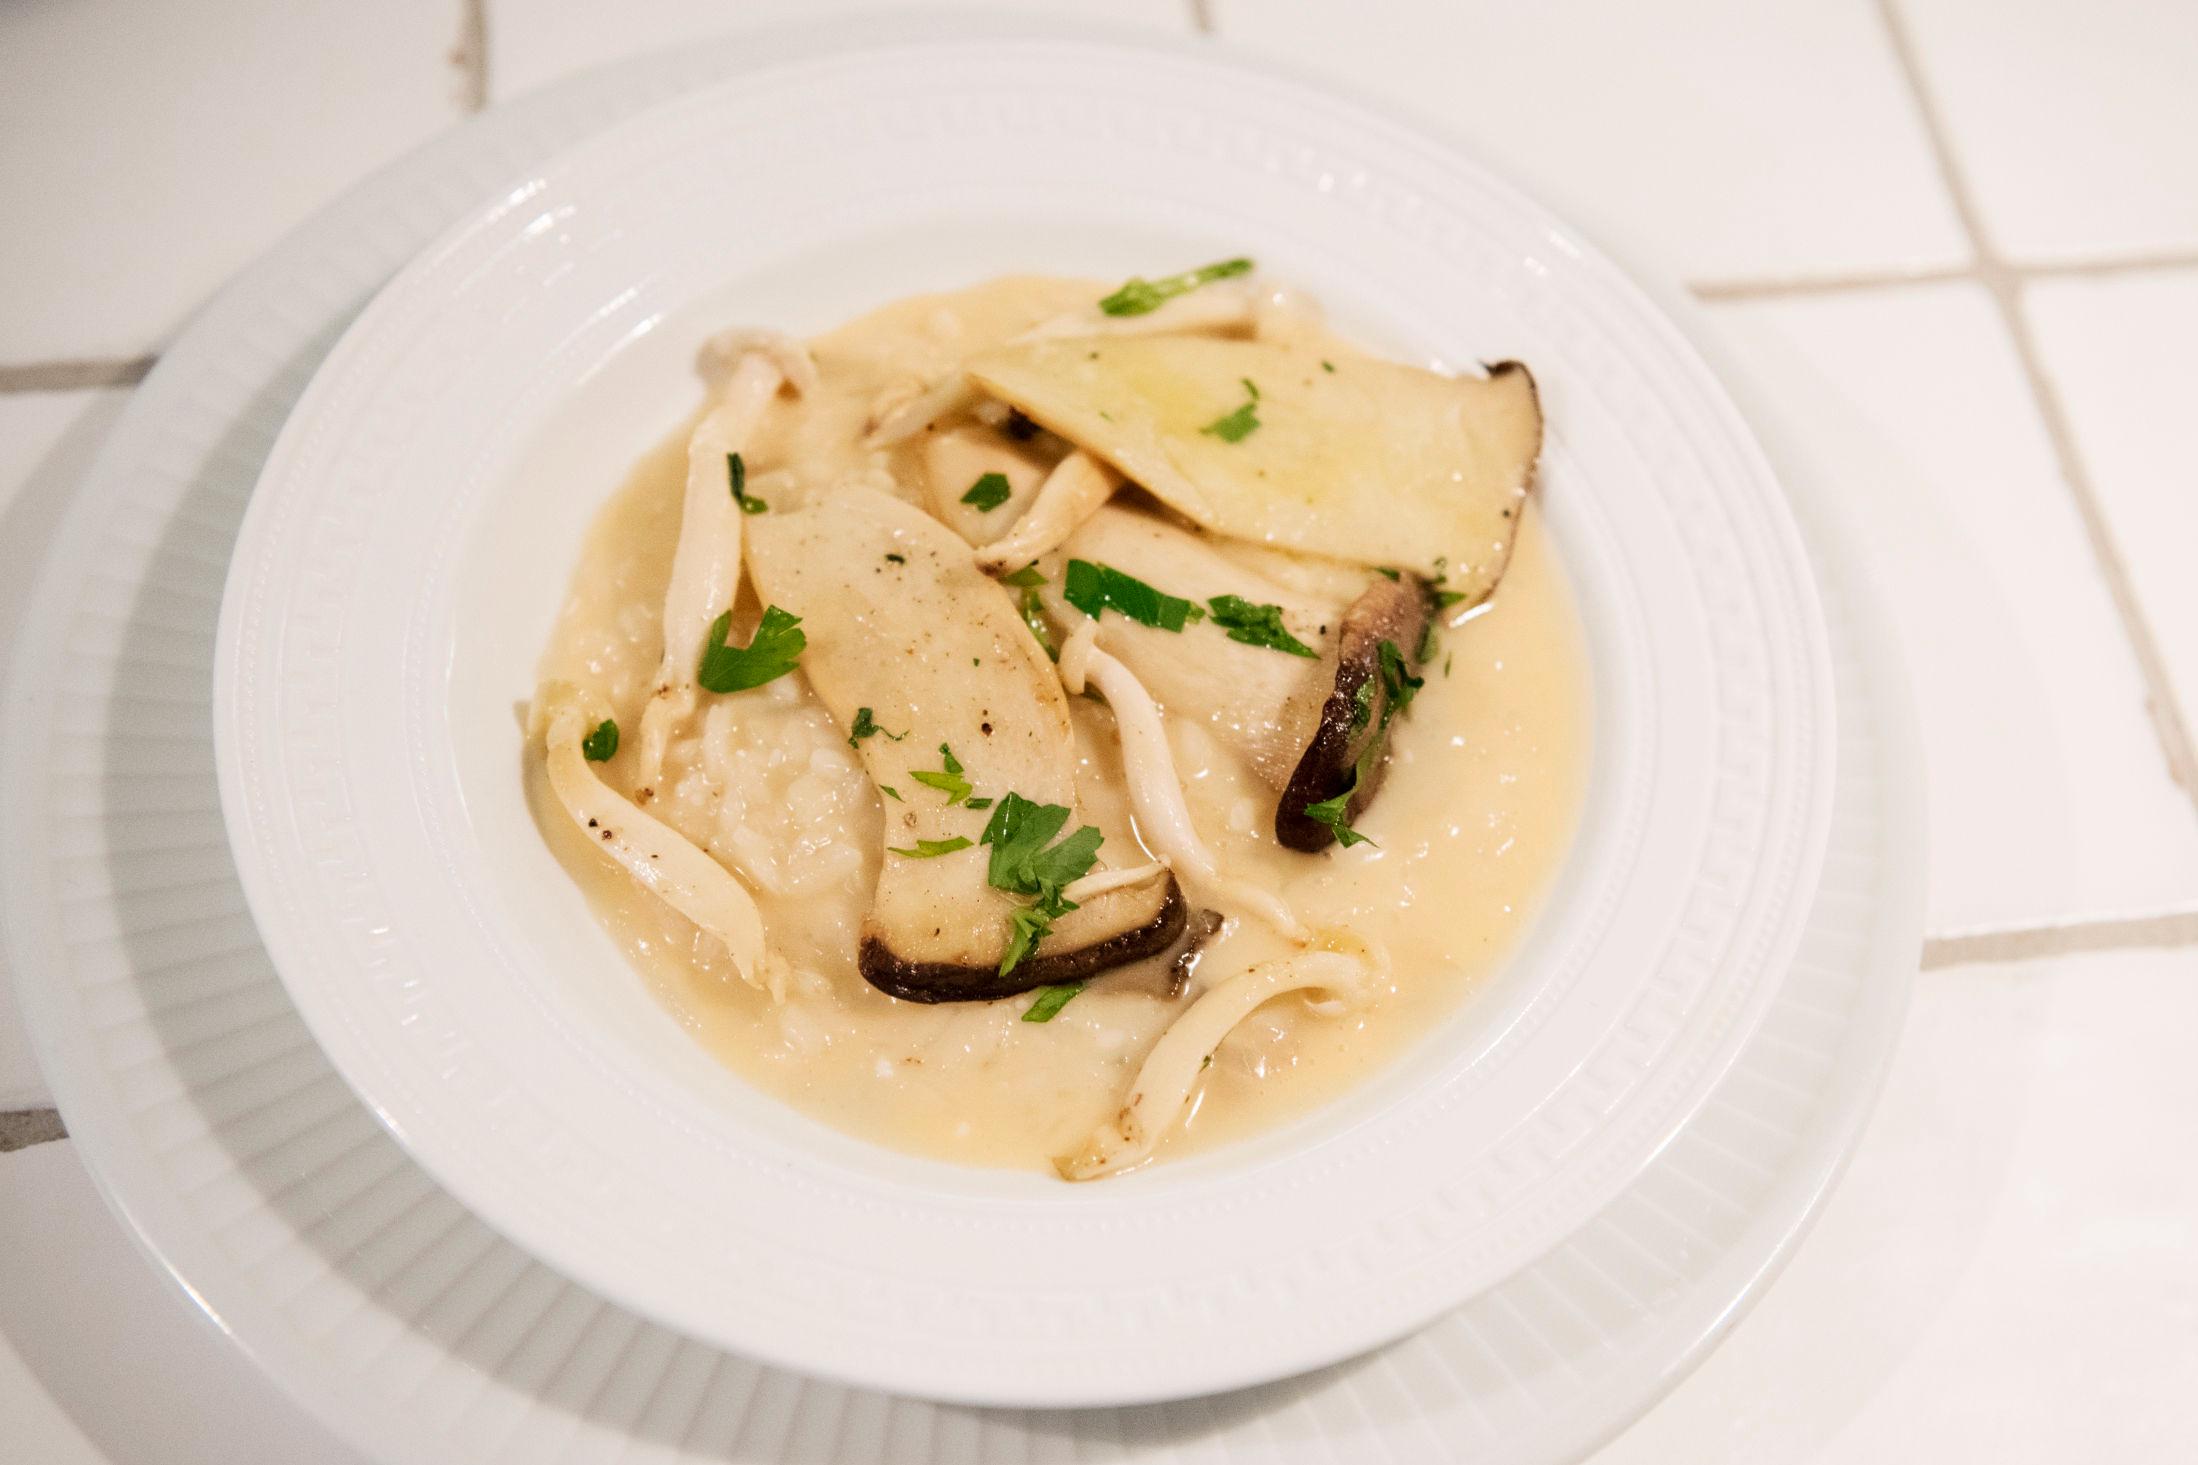 FENOMENALT: Drøm deg bort til Italia med ravioli fylt med hummer og safran. Foto: Marie von Krogh.